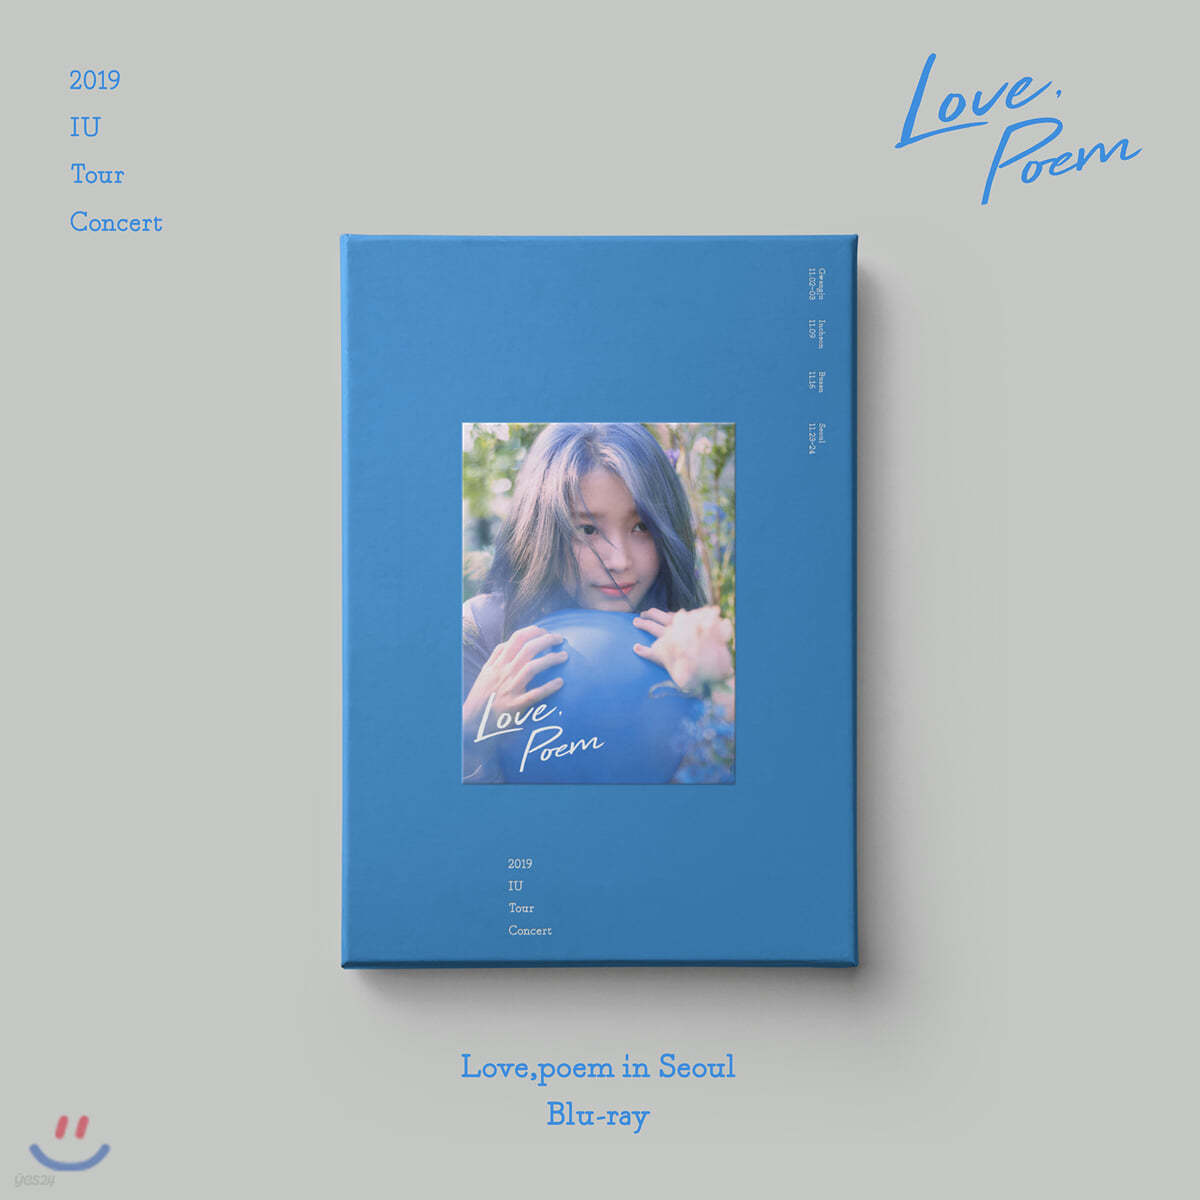 아이유 (IU) - 2019 IU Tour Concert [Love, poem] in Seoul Blu-ray